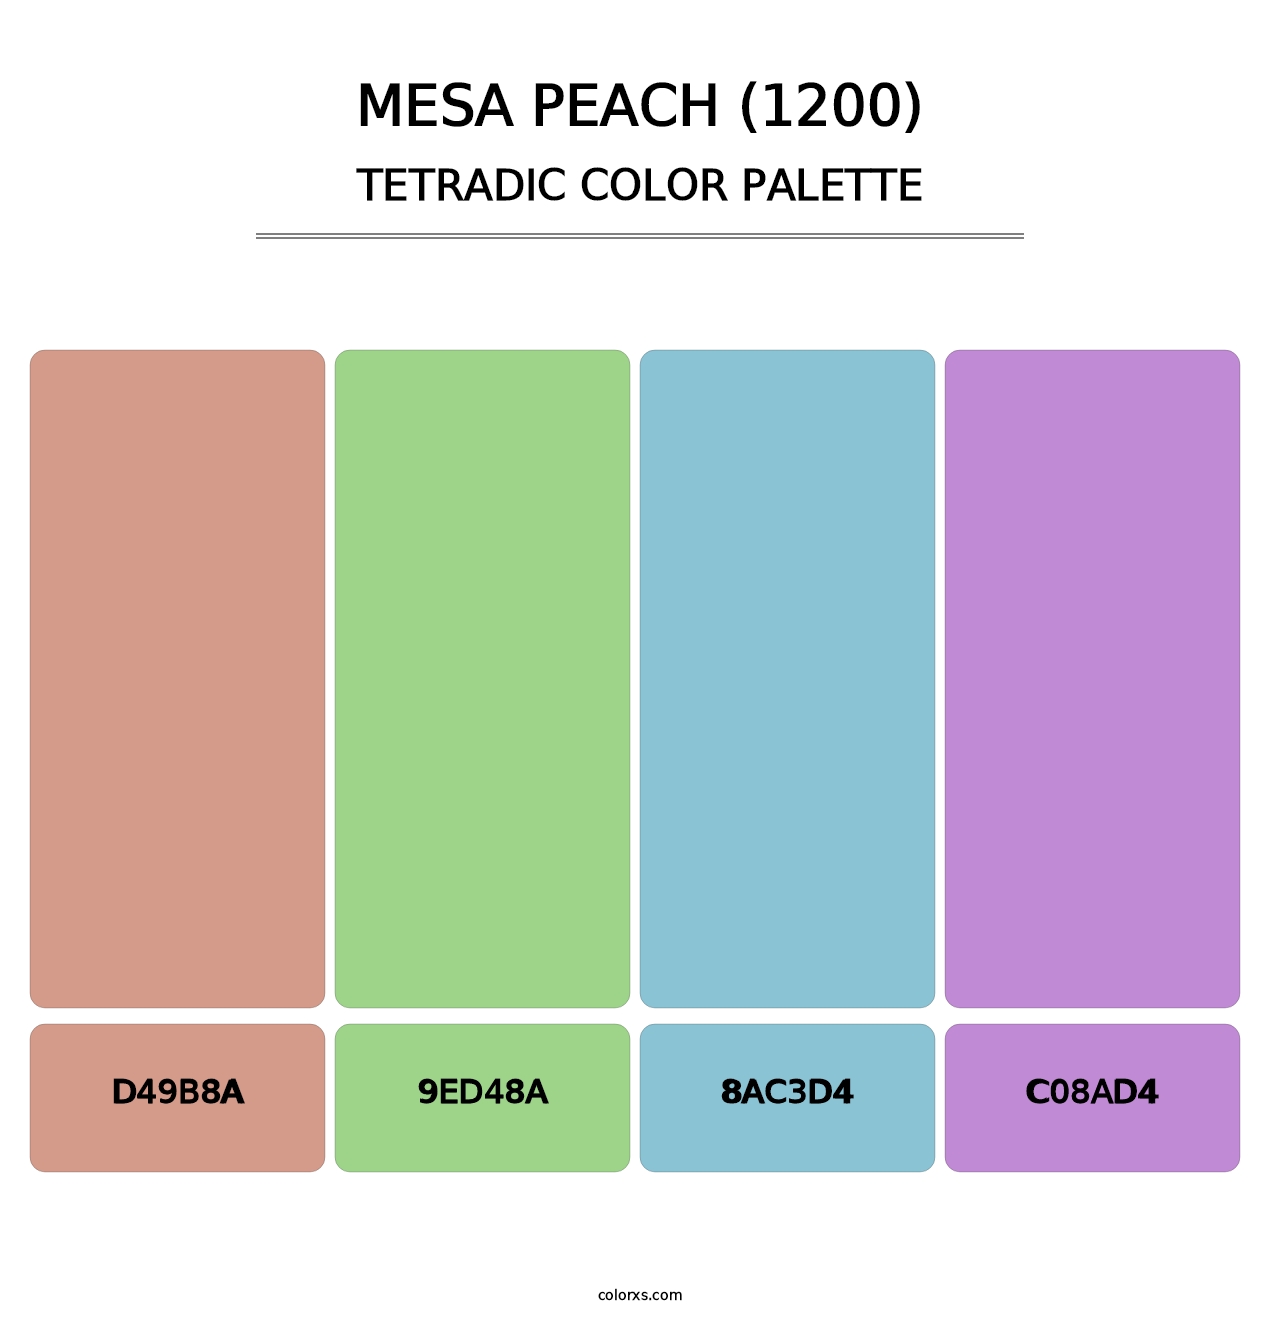 Mesa Peach (1200) - Tetradic Color Palette